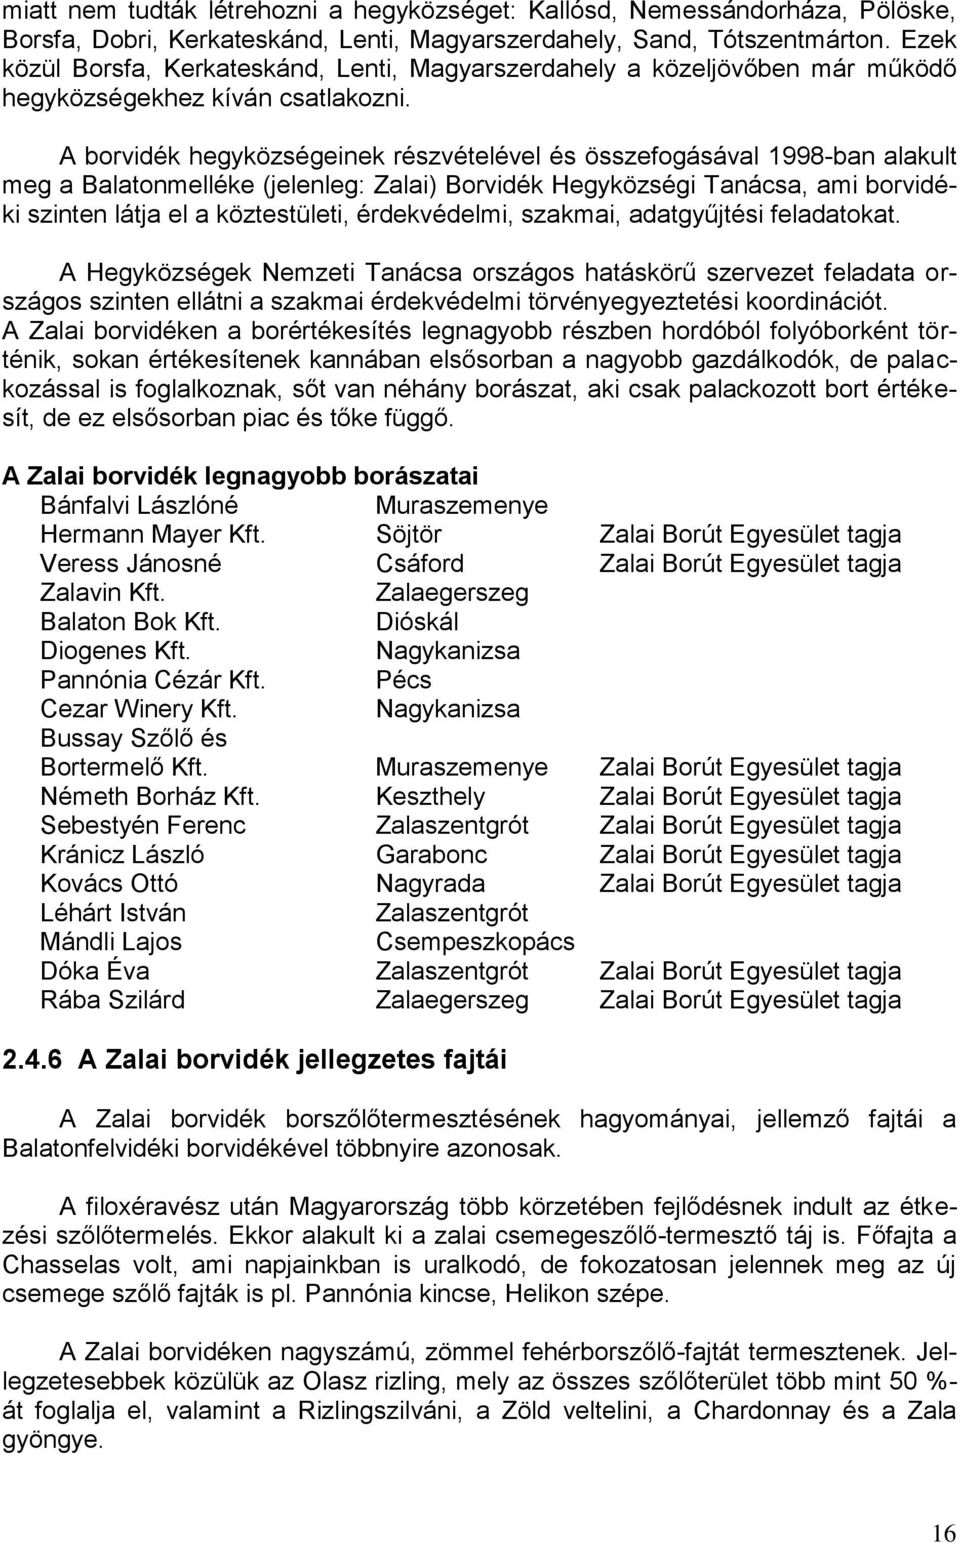 A borvidék hegyközségeinek részvételével és összefogásával 1998-ban alakult meg a Balatonmelléke (jelenleg: Zalai) Borvidék Hegyközségi Tanácsa, ami borvidéki szinten látja el a köztestületi,